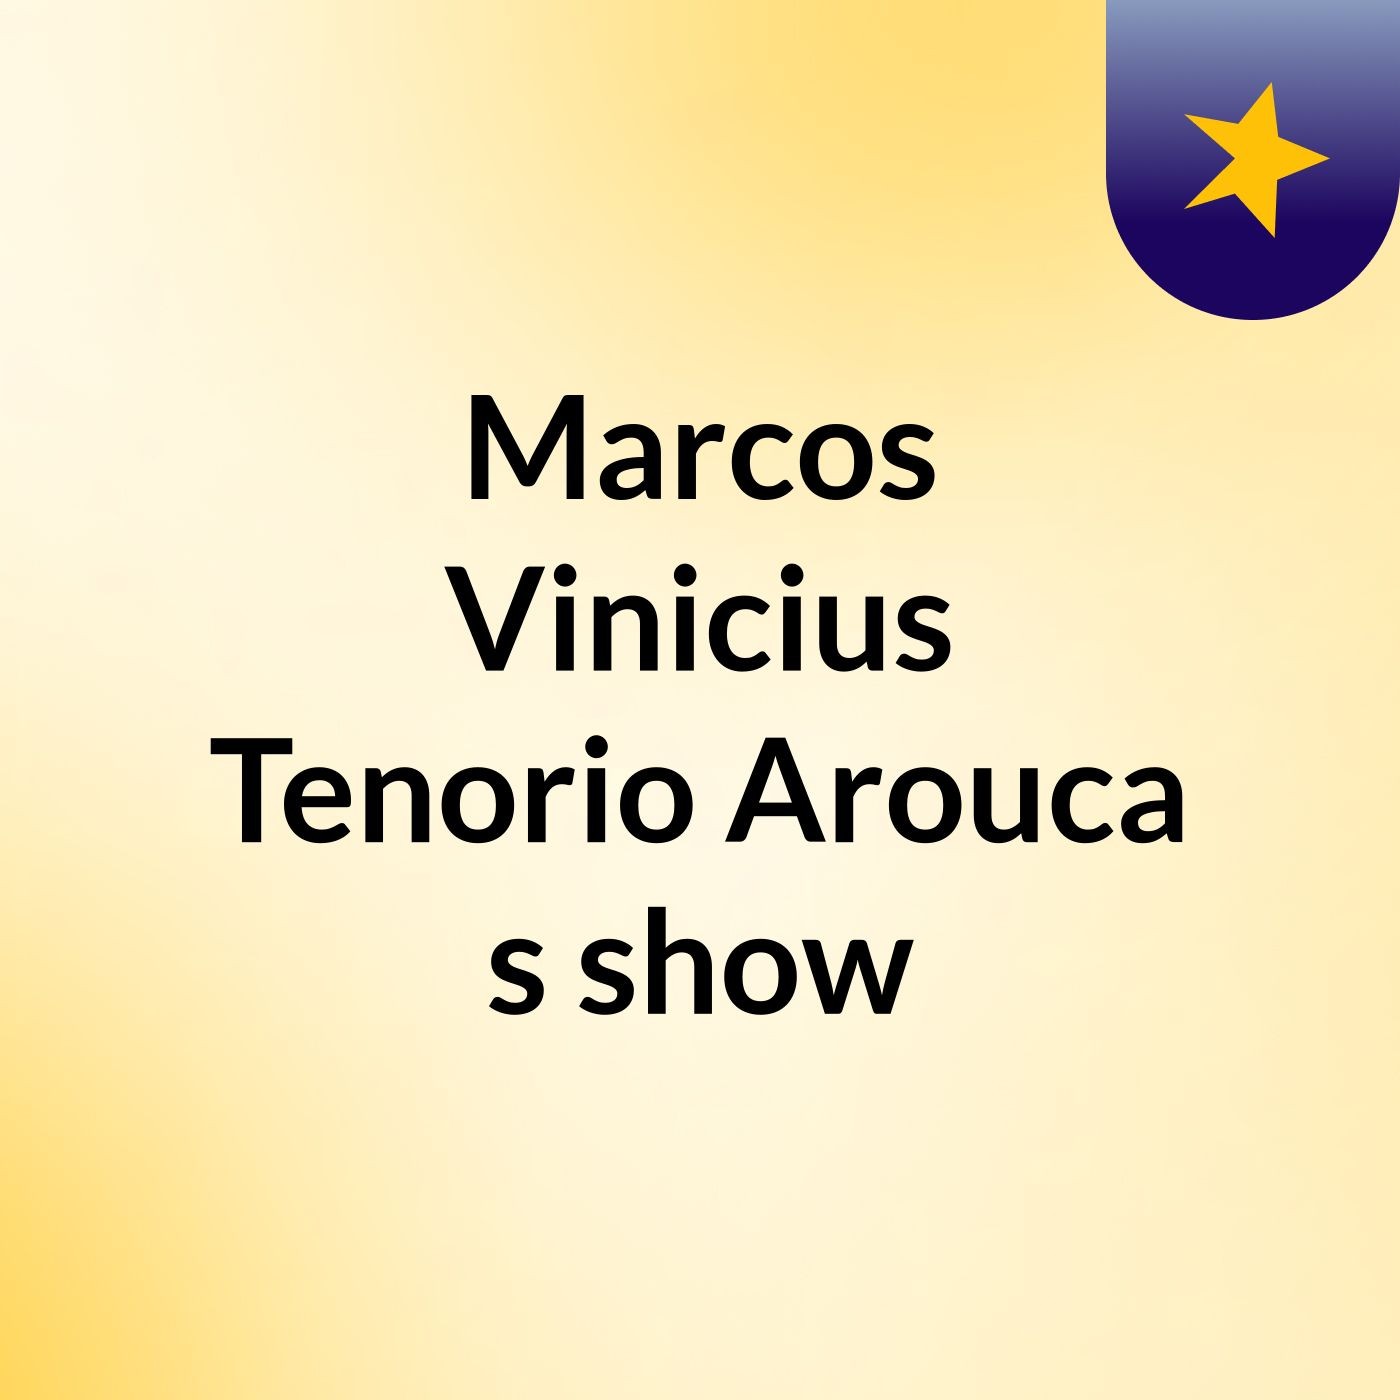 Marcos Vinicius Tenorio Arouca's show